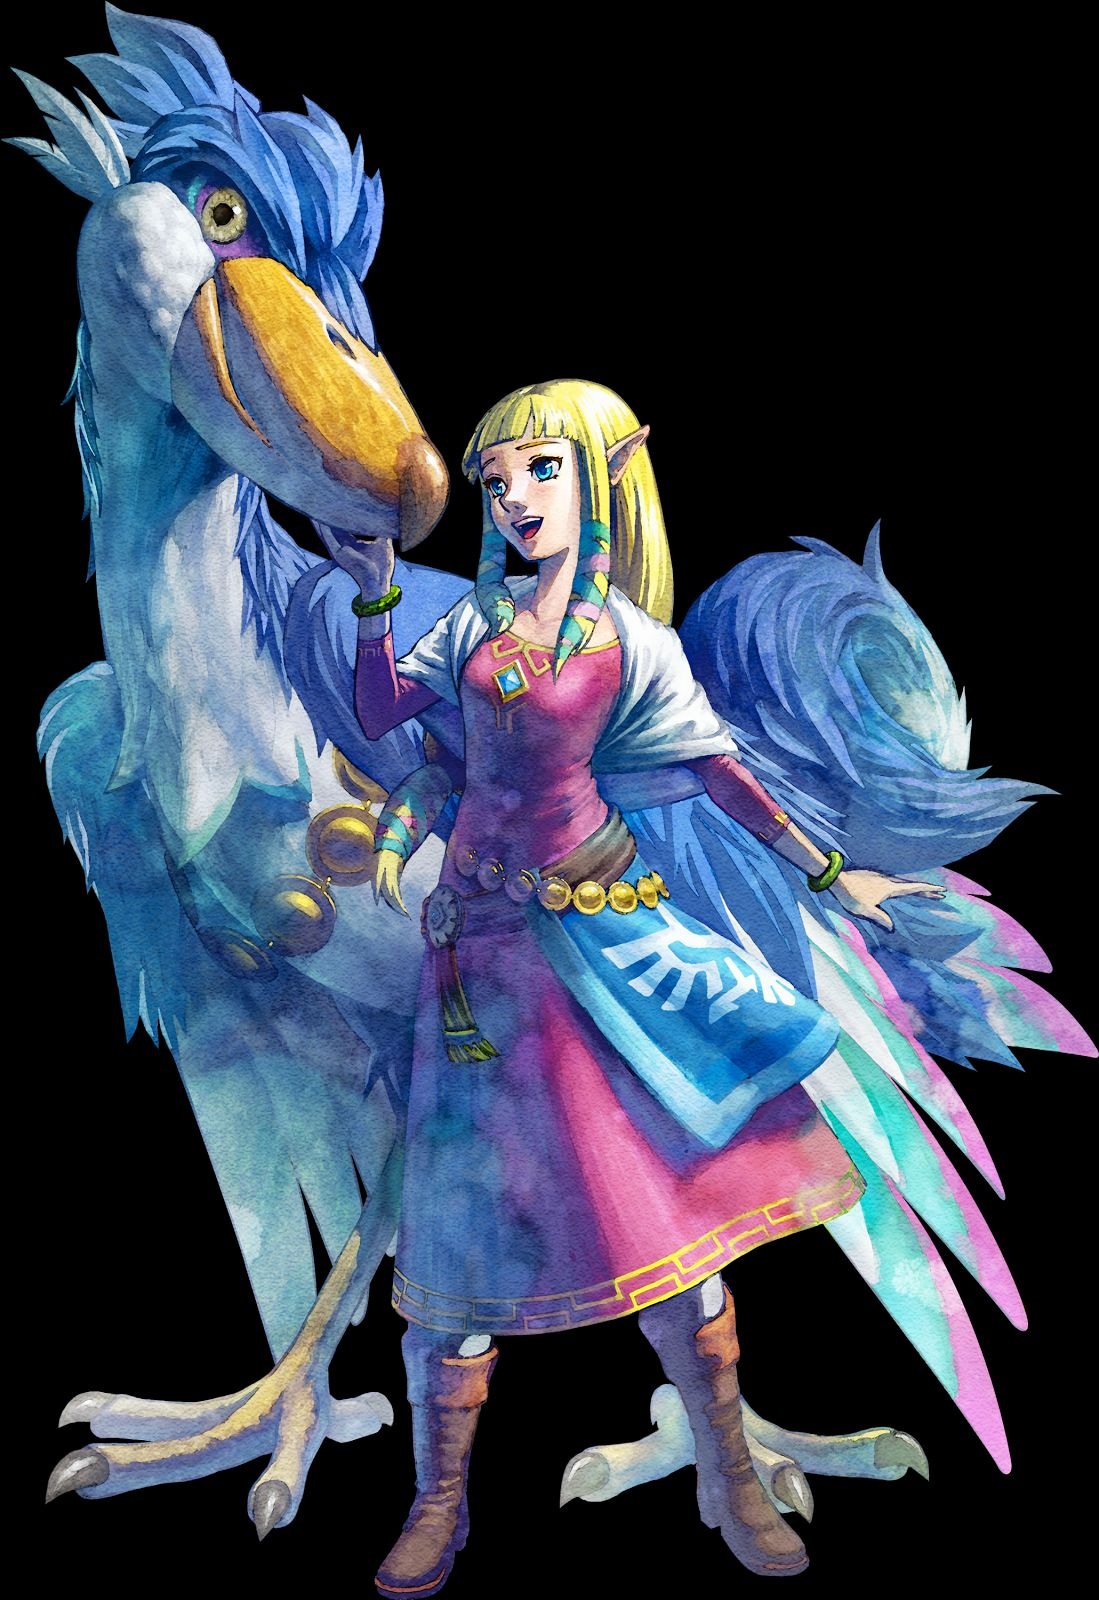 Nieuw karakter en stijl Zelda Skyward sword Final fantasy 14 Zelda is een heel bekend karakter en ik komt in veel verschillende Zelda